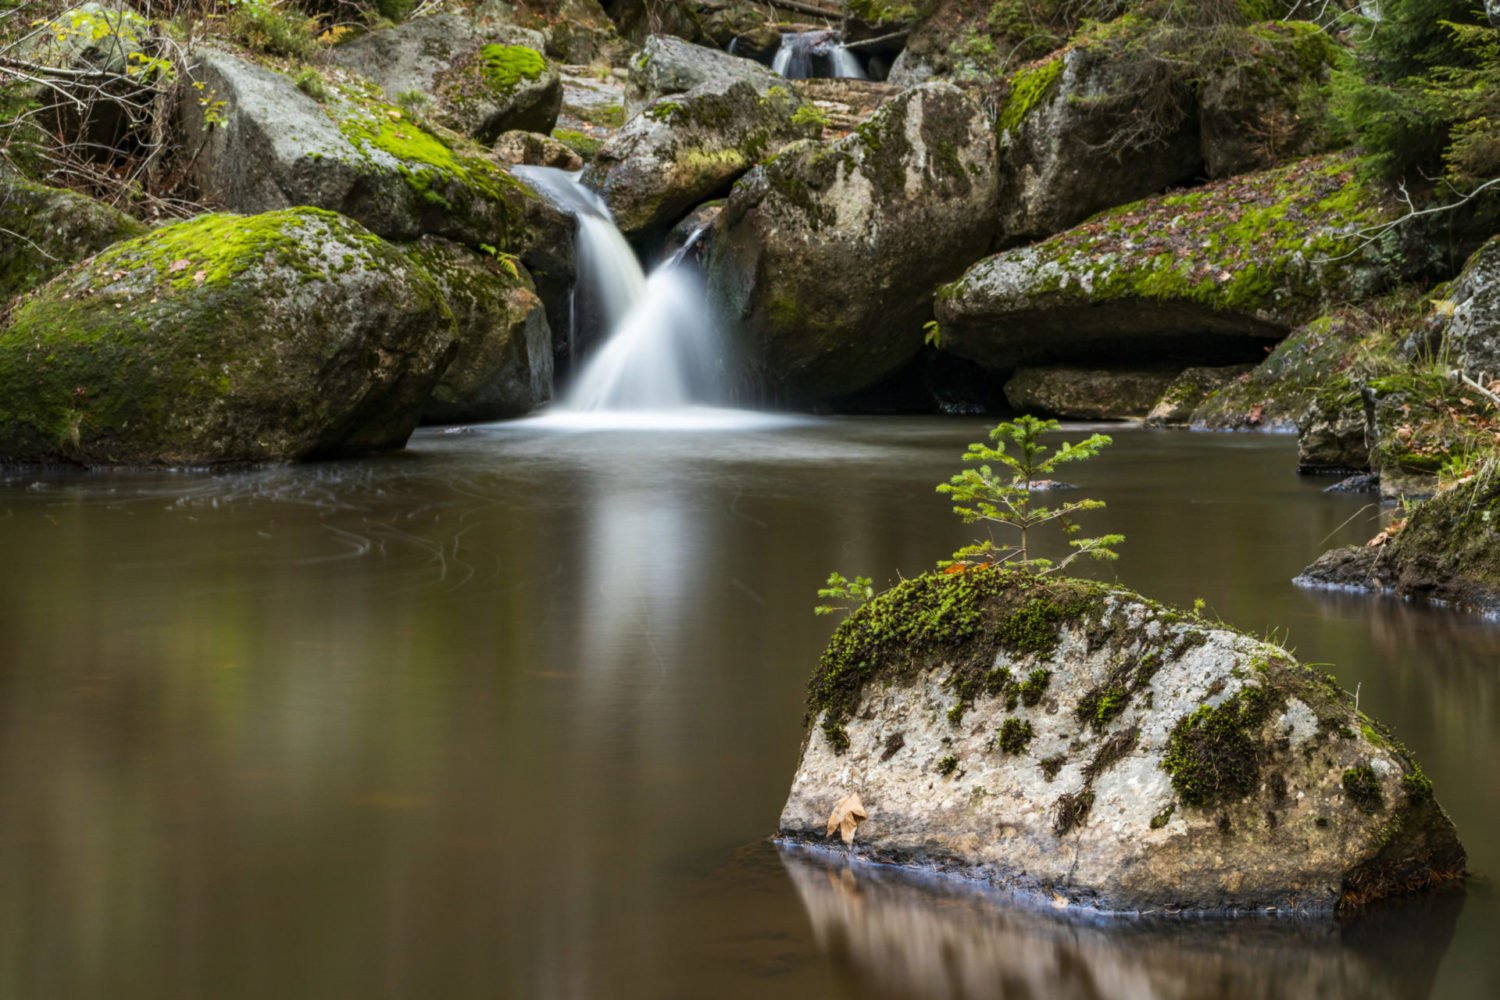 vodopády na horské říčce Jedlová protékající přírodní rezervací Jedlový důl nedaleko Josefova Dolu